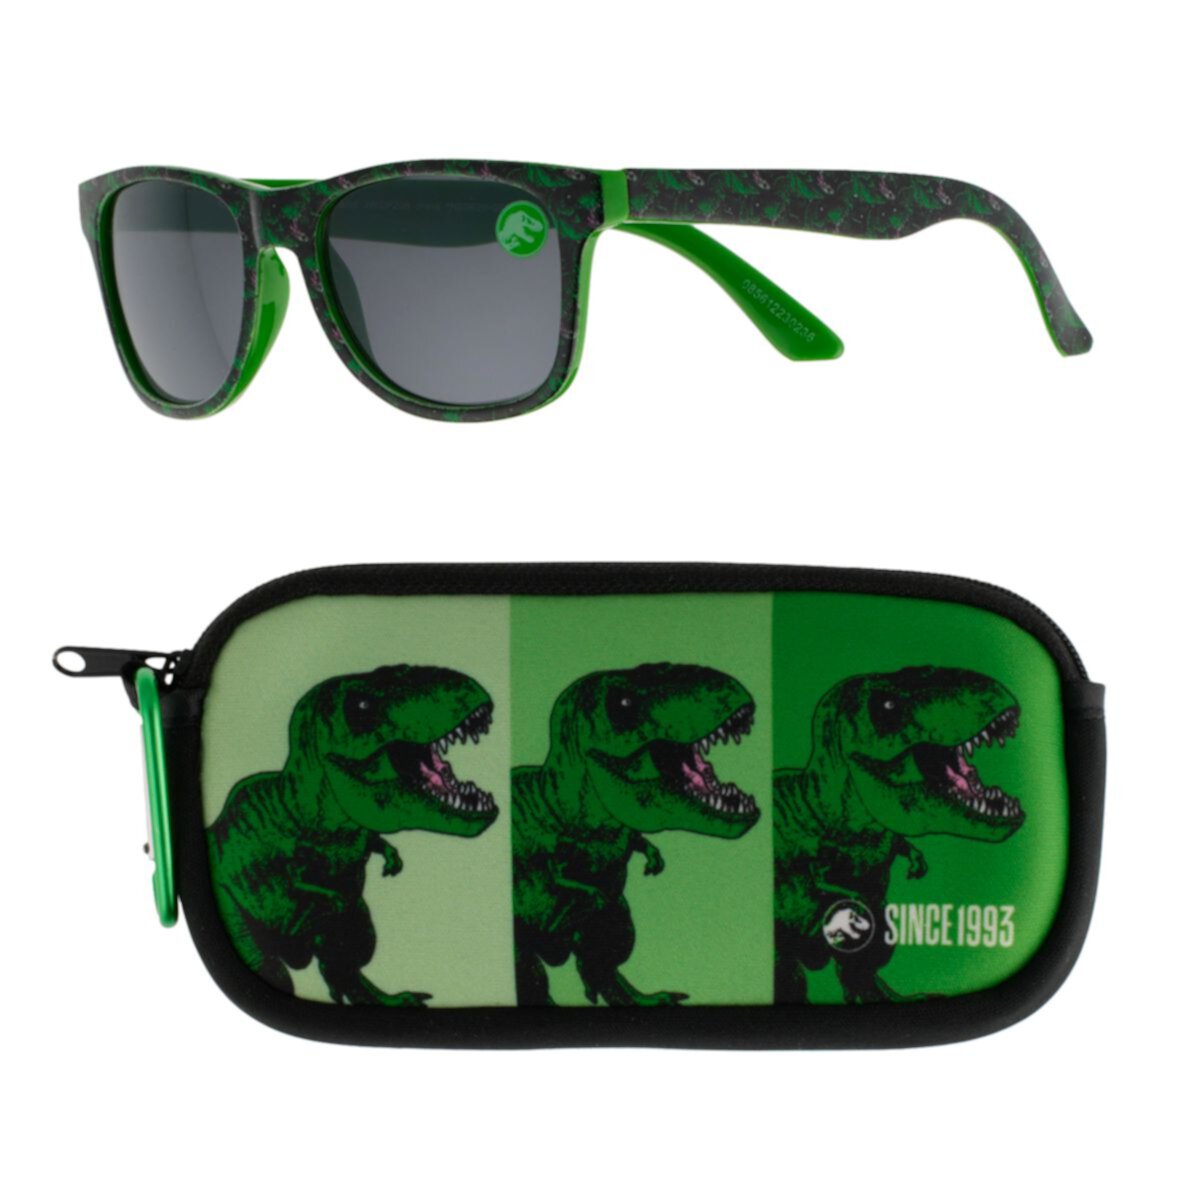 Boys' Jurassic Park Sunglasses & Case Set Licensed Character